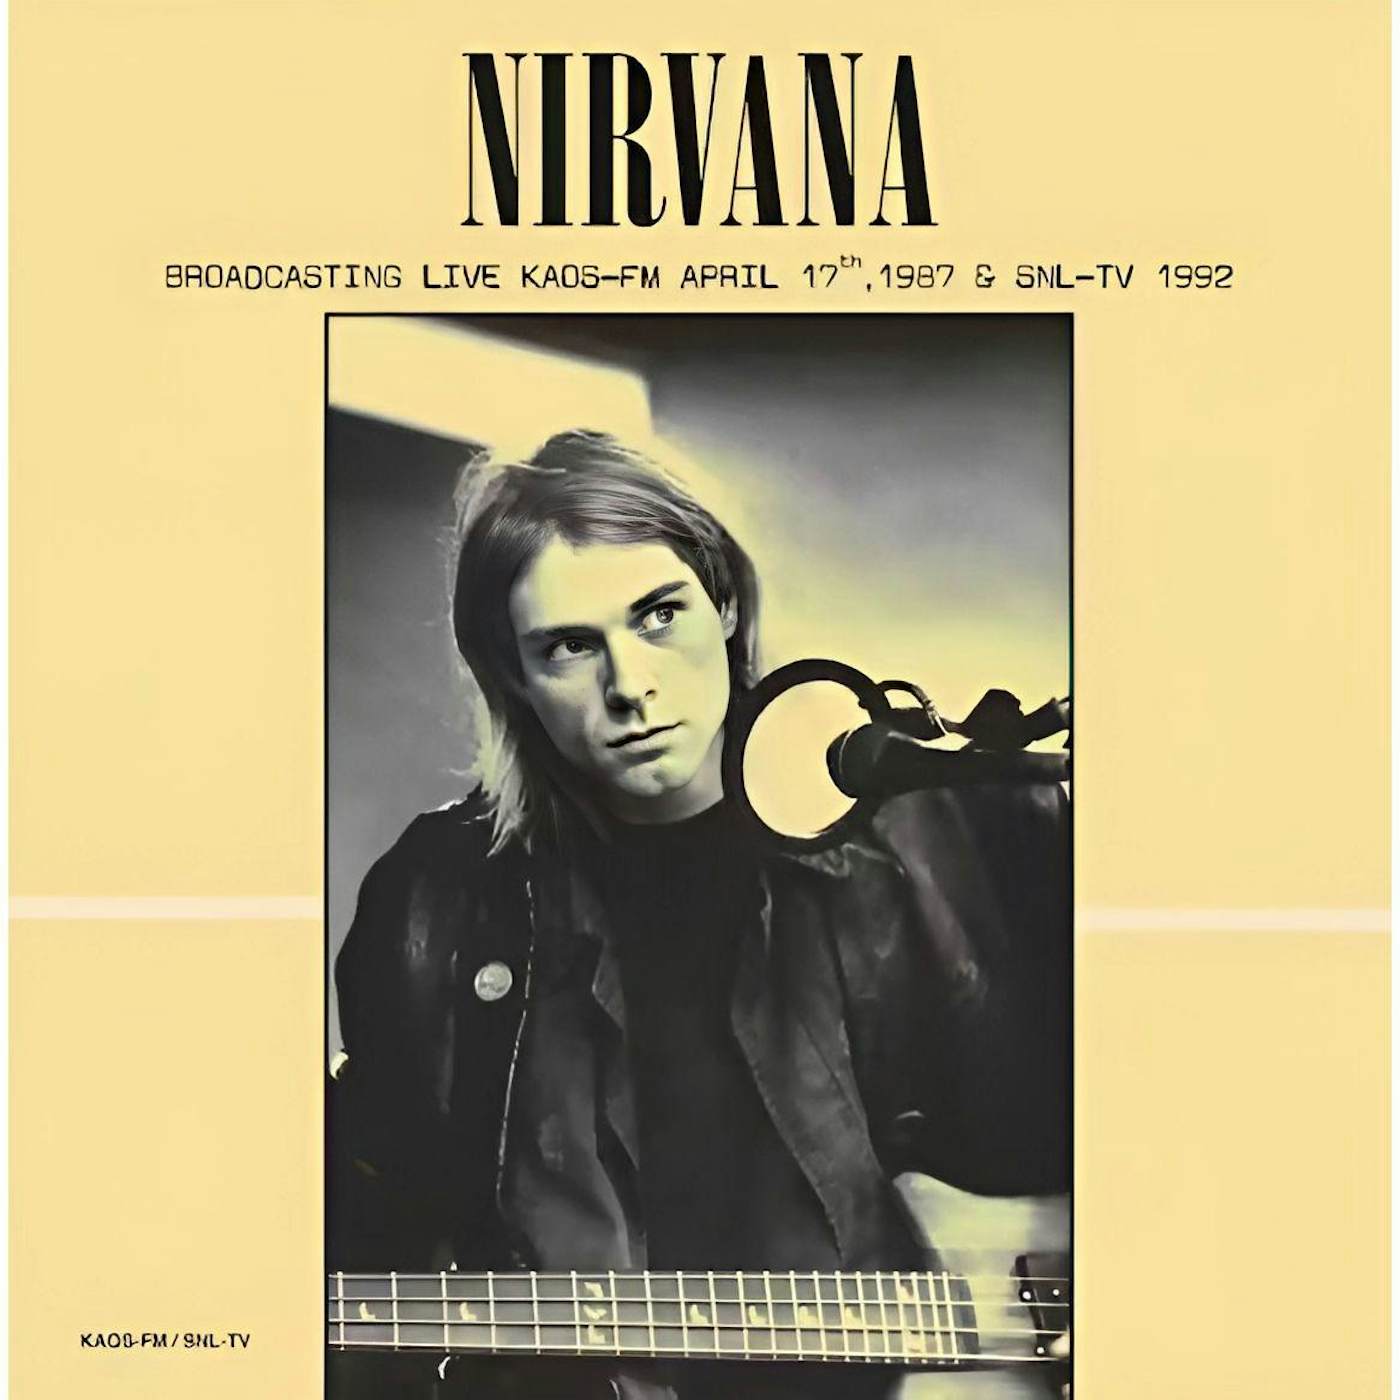 Nirvana BROADCASTING LIVE KAOS-FM APRIL 17TH 1987 & SNL-TV 1992 Vinyl Record